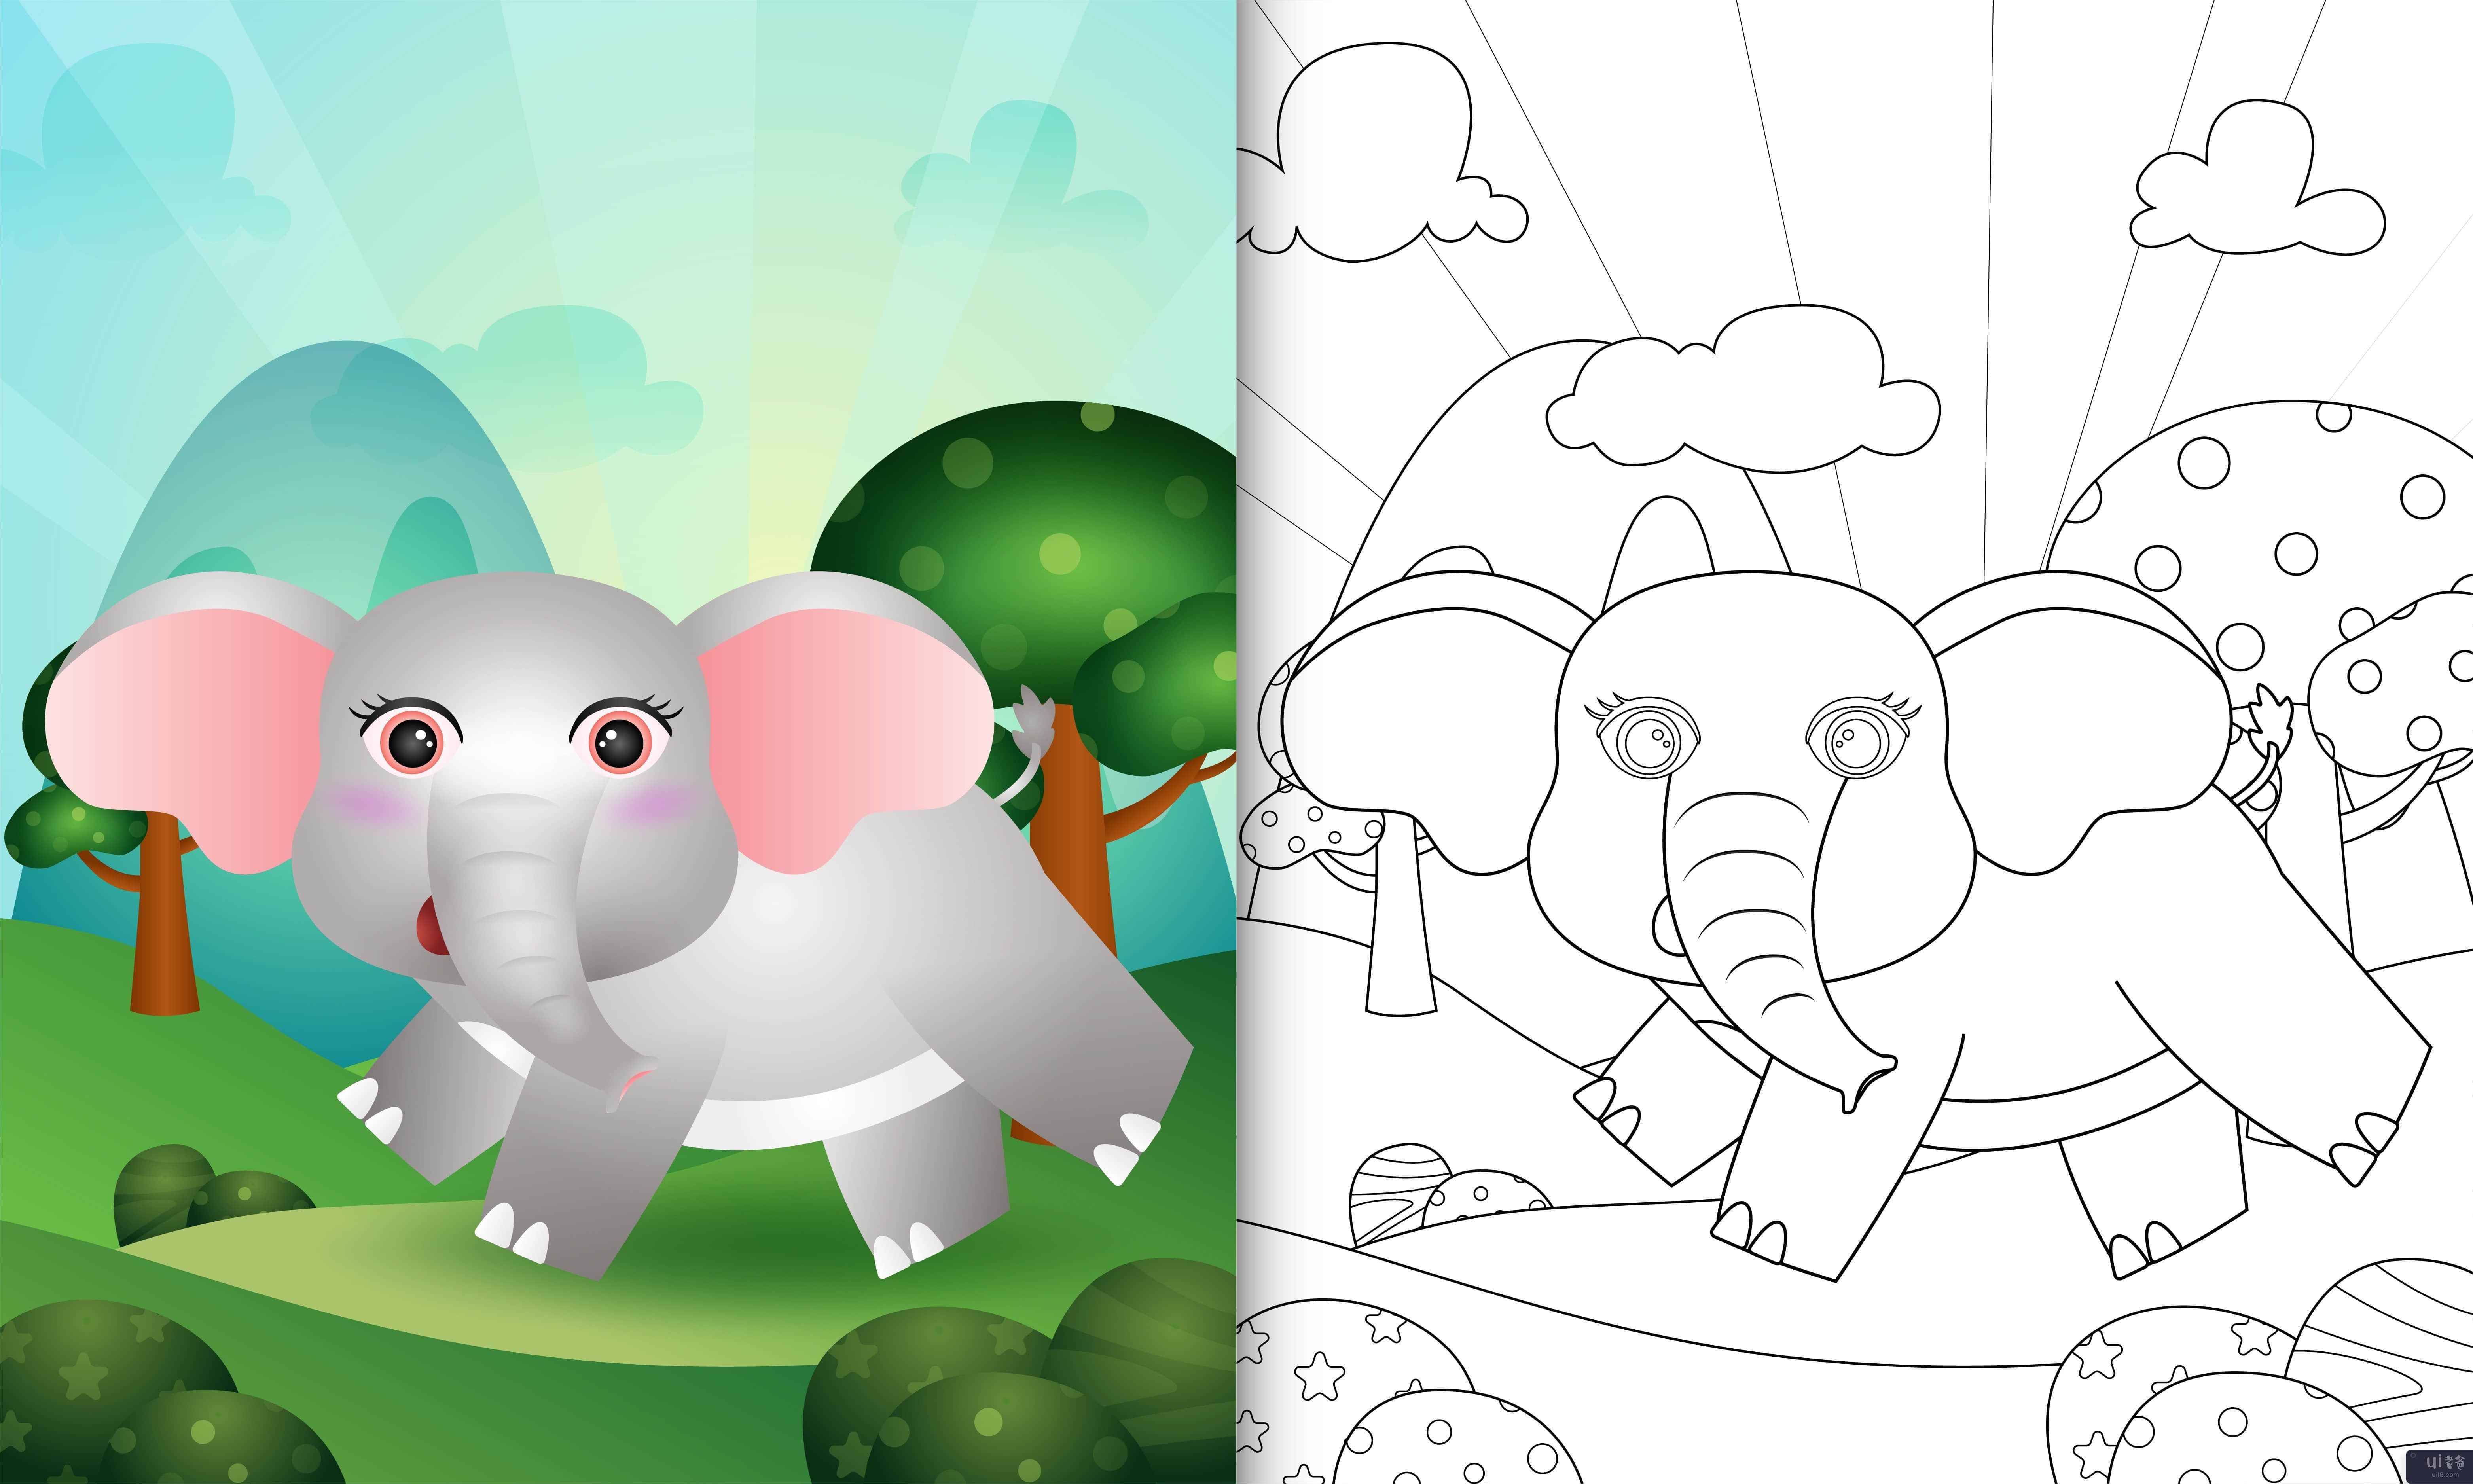 带有可爱大象角色插图的儿童着色书(coloring book for kids with a cute elephant character illustration)插图2